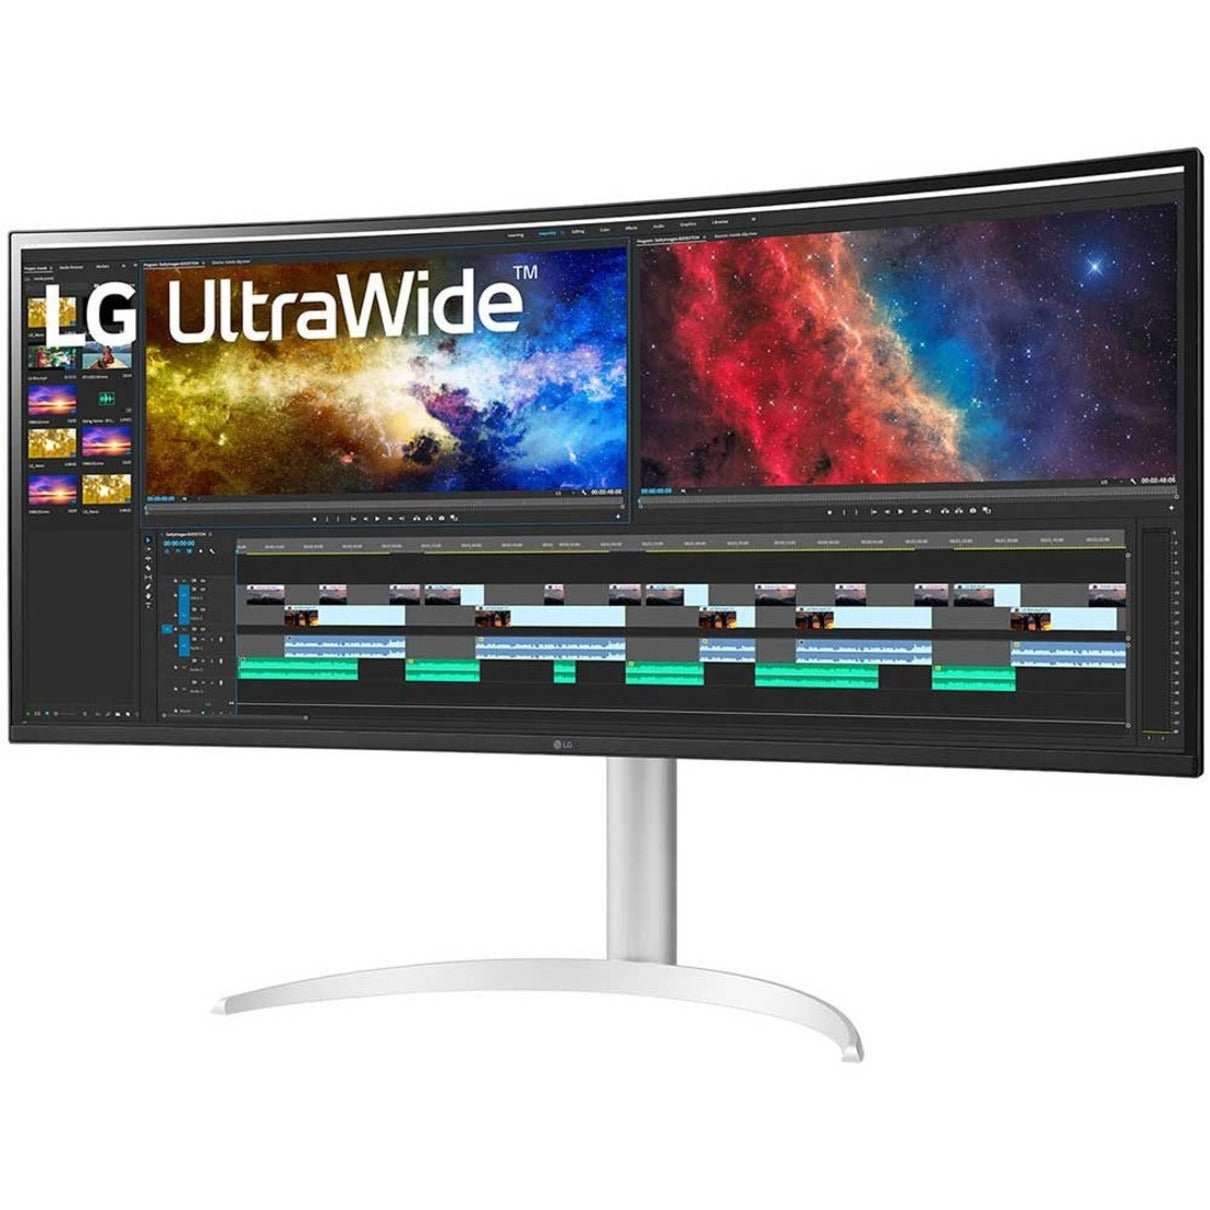 LG Ultrawide 38BP85C-W Moniteur de jeu LCD panoramique 3840 x 1600 USB Type-C HDMI DP AMD FreeSync 2 HDMI 300 nits 95% DCI-P3 (CIE 1976) 107 milliard de couleurs garantie de 3 ans